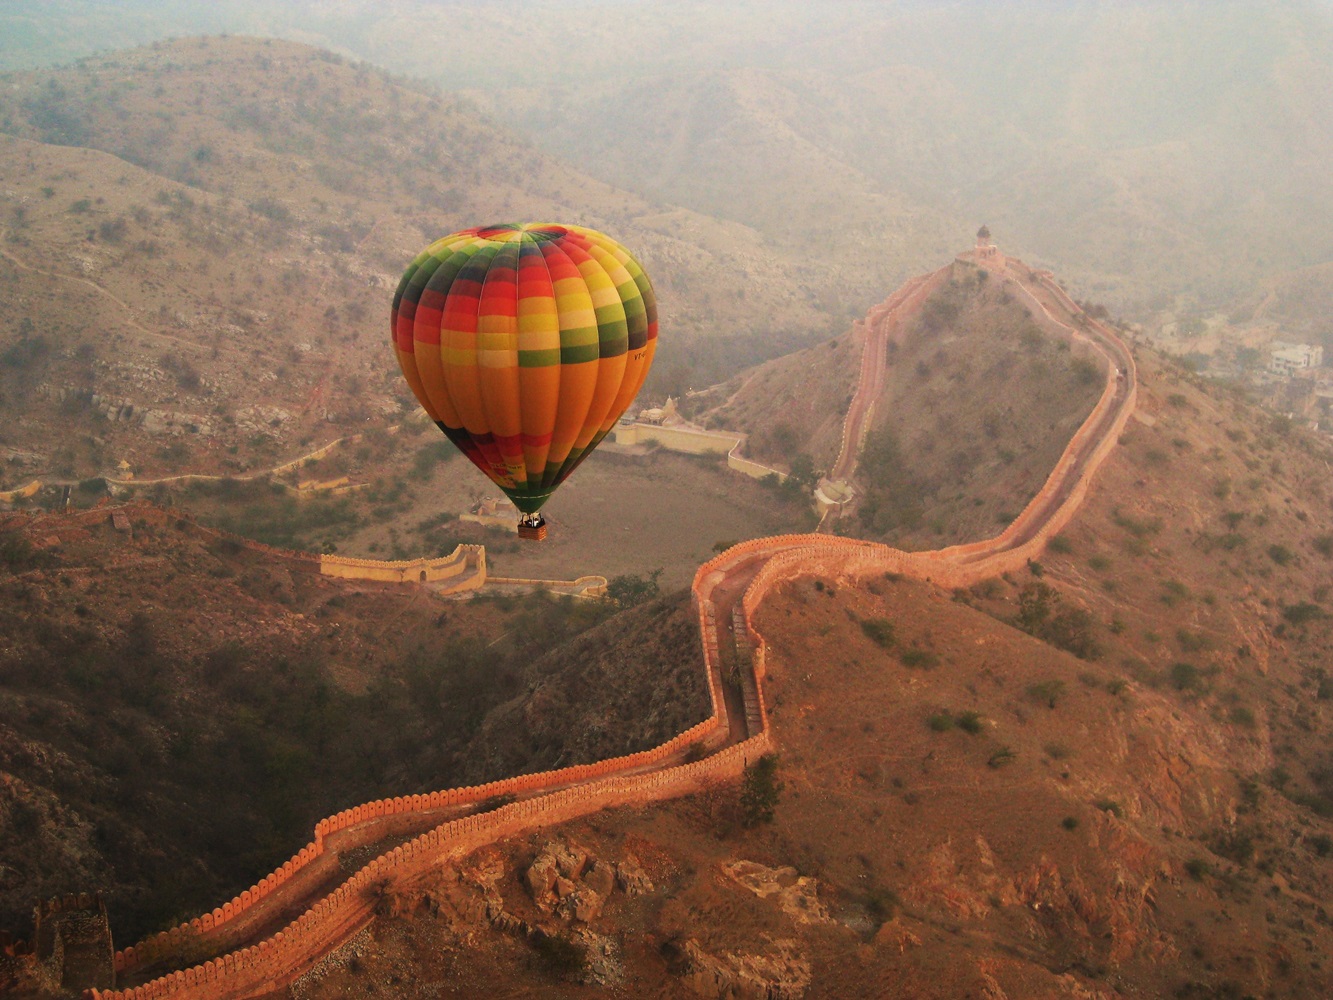 India, Rajasthan - Hot Air Balloons